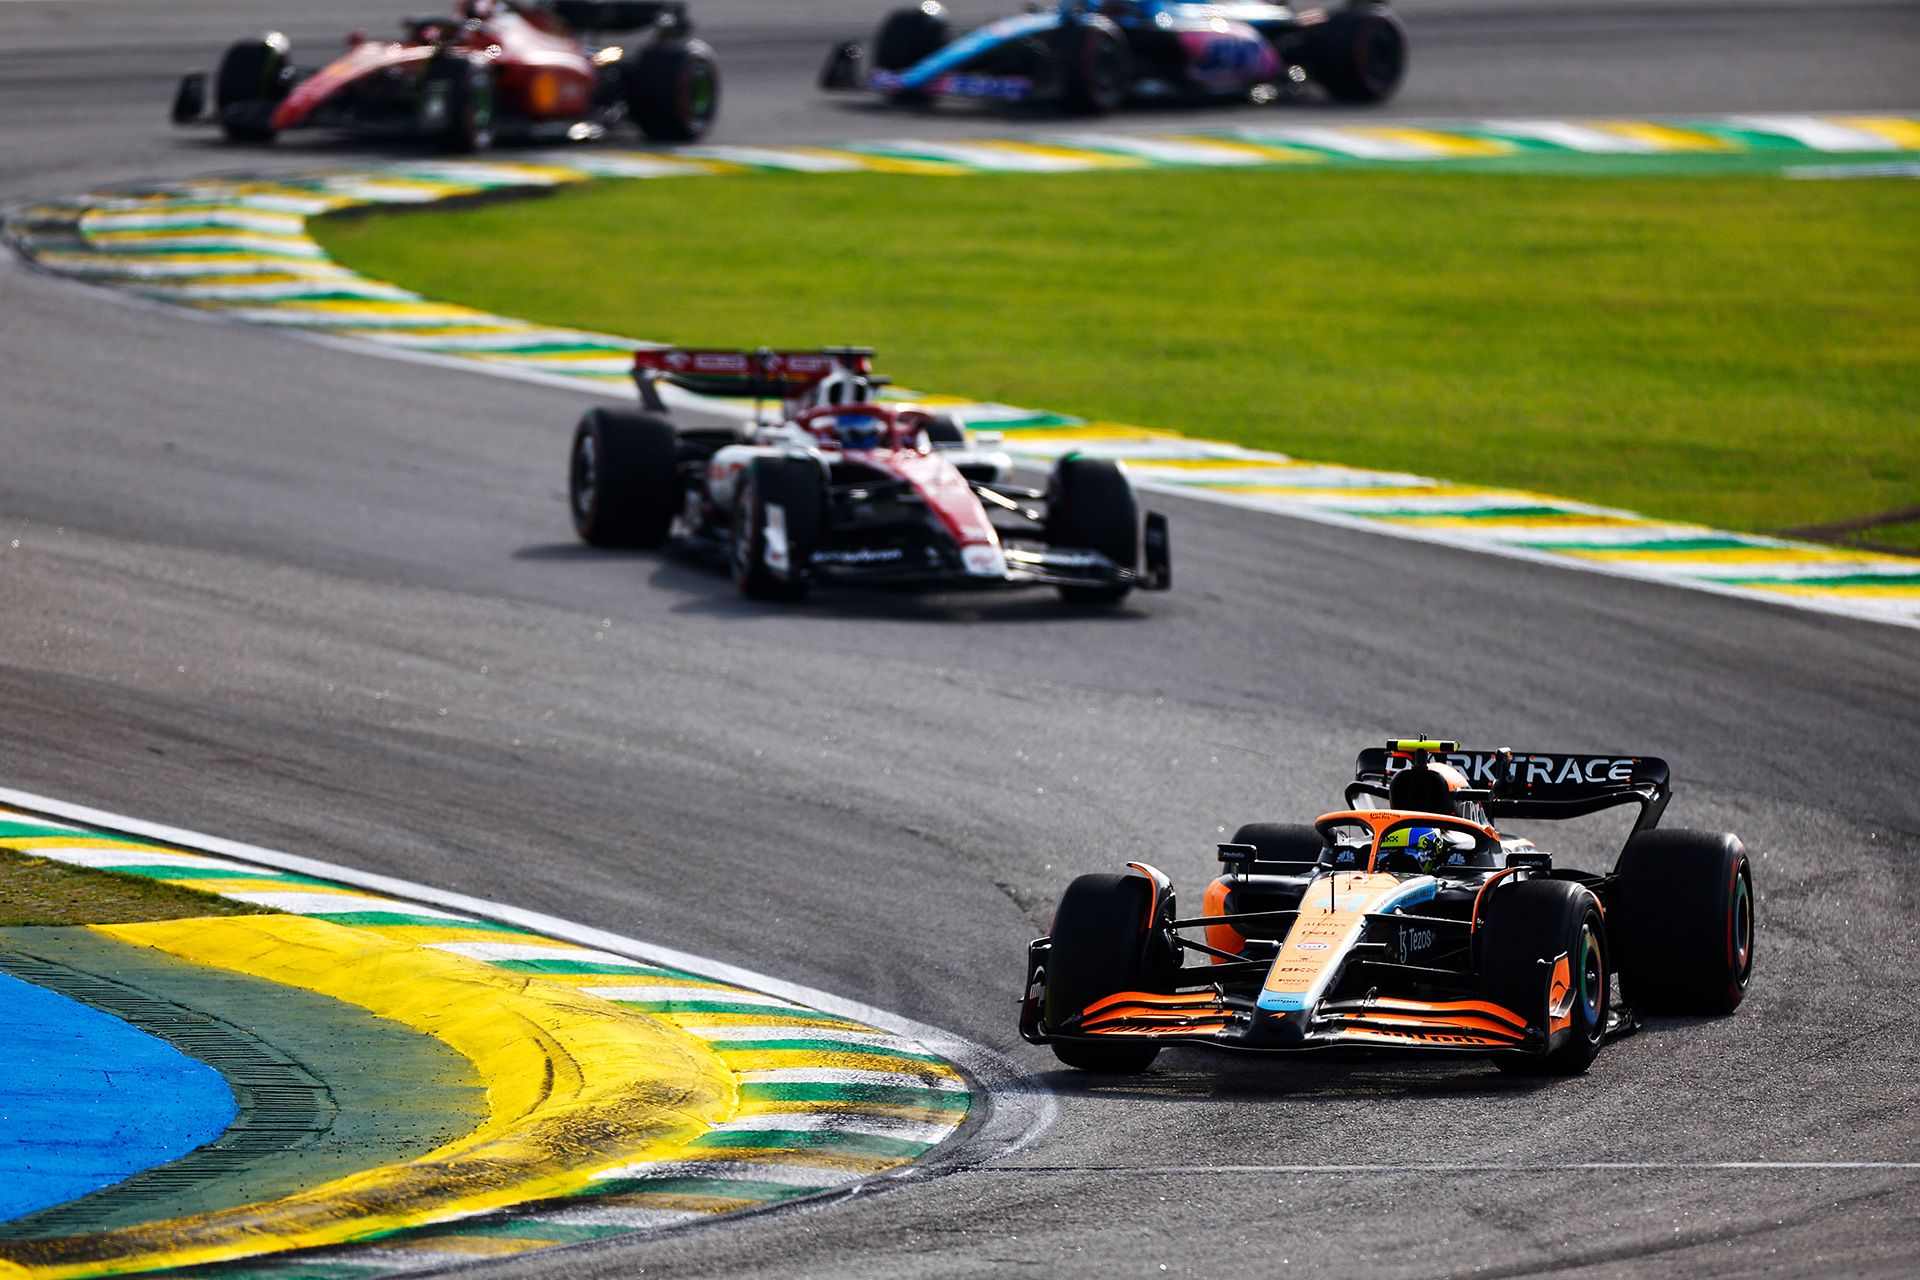 Sao Paulo Grand Prix (Autodromo Jose Carlos Pace in Brazil)